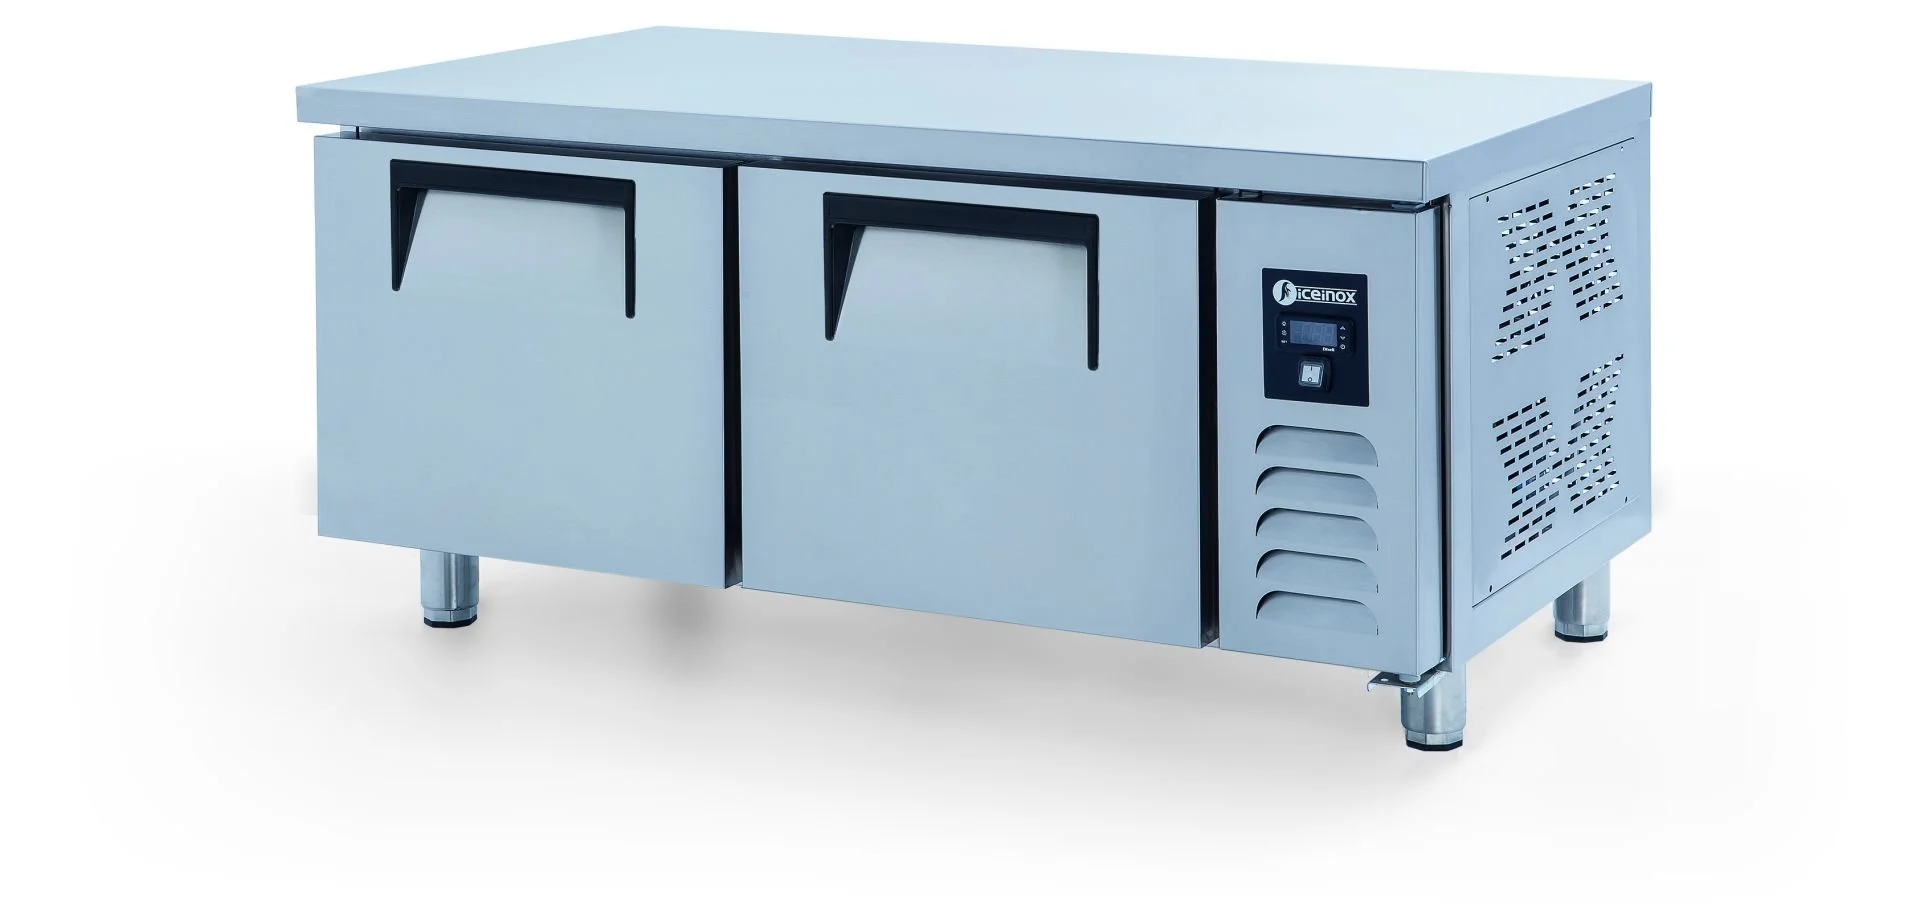 ICEINOX - Iceinox UTN 220 CR Kısa Model Pişirici Altı Buzdolabı, 2 Kapılı, 220 L